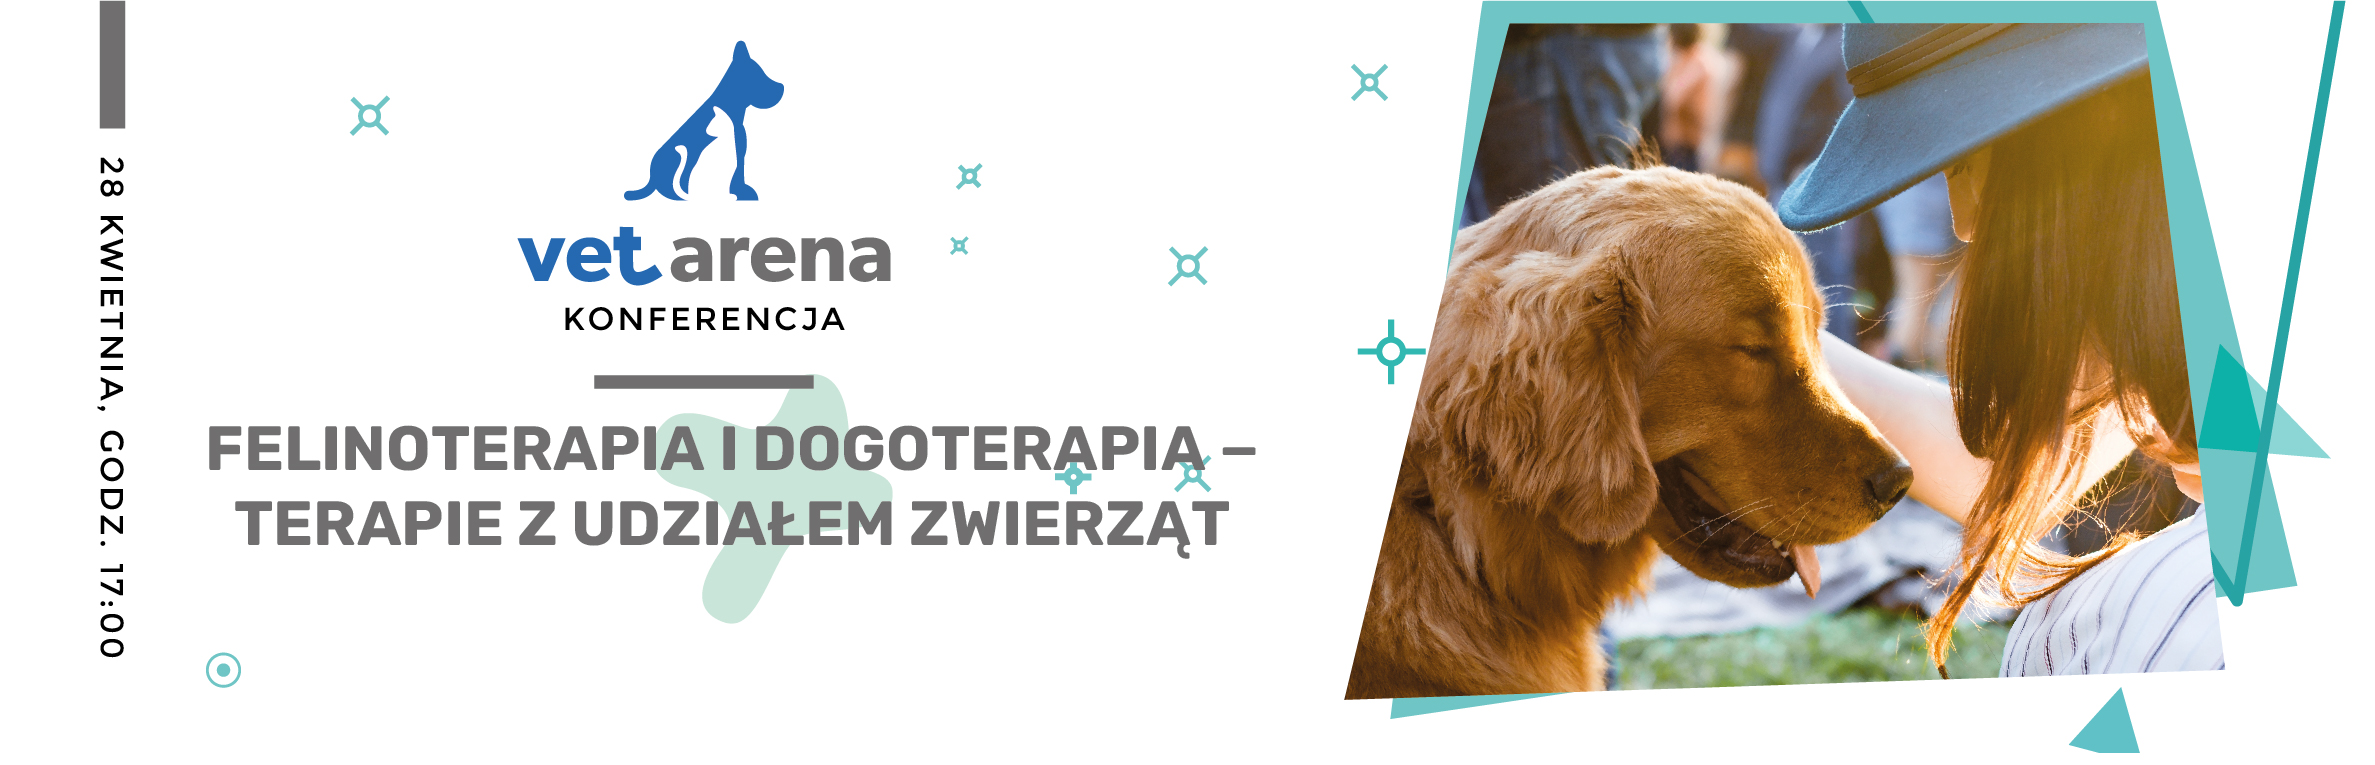 VI Konferencja Vet Arena Online − Felinoterapia i dogoterapia − terapie z udziałem zwierząt